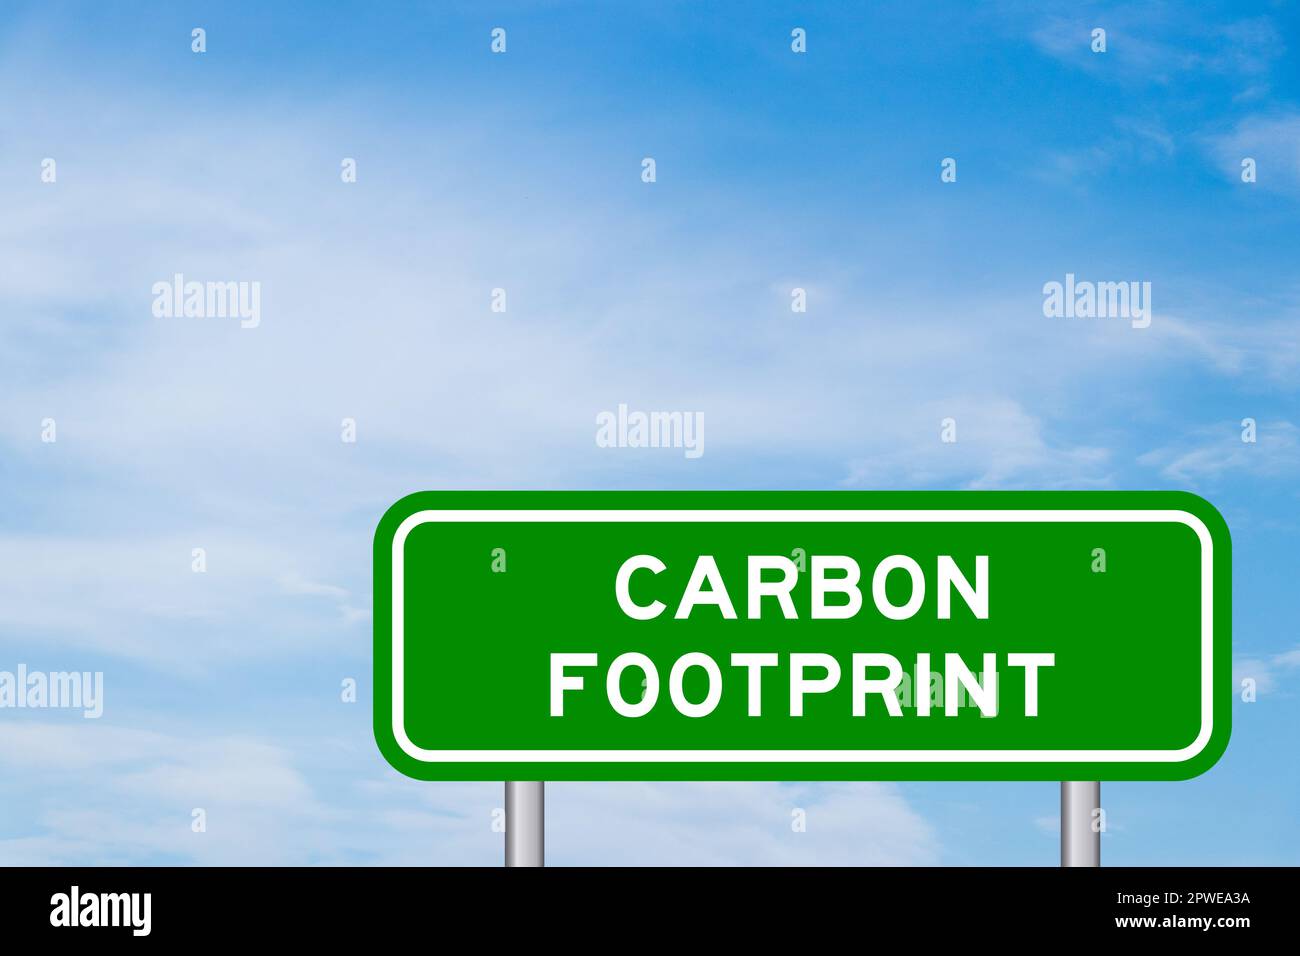 Cartello verde per il trasporto con scritta Carbon footprint su cielo blu con fondo nuvola bianco Foto Stock